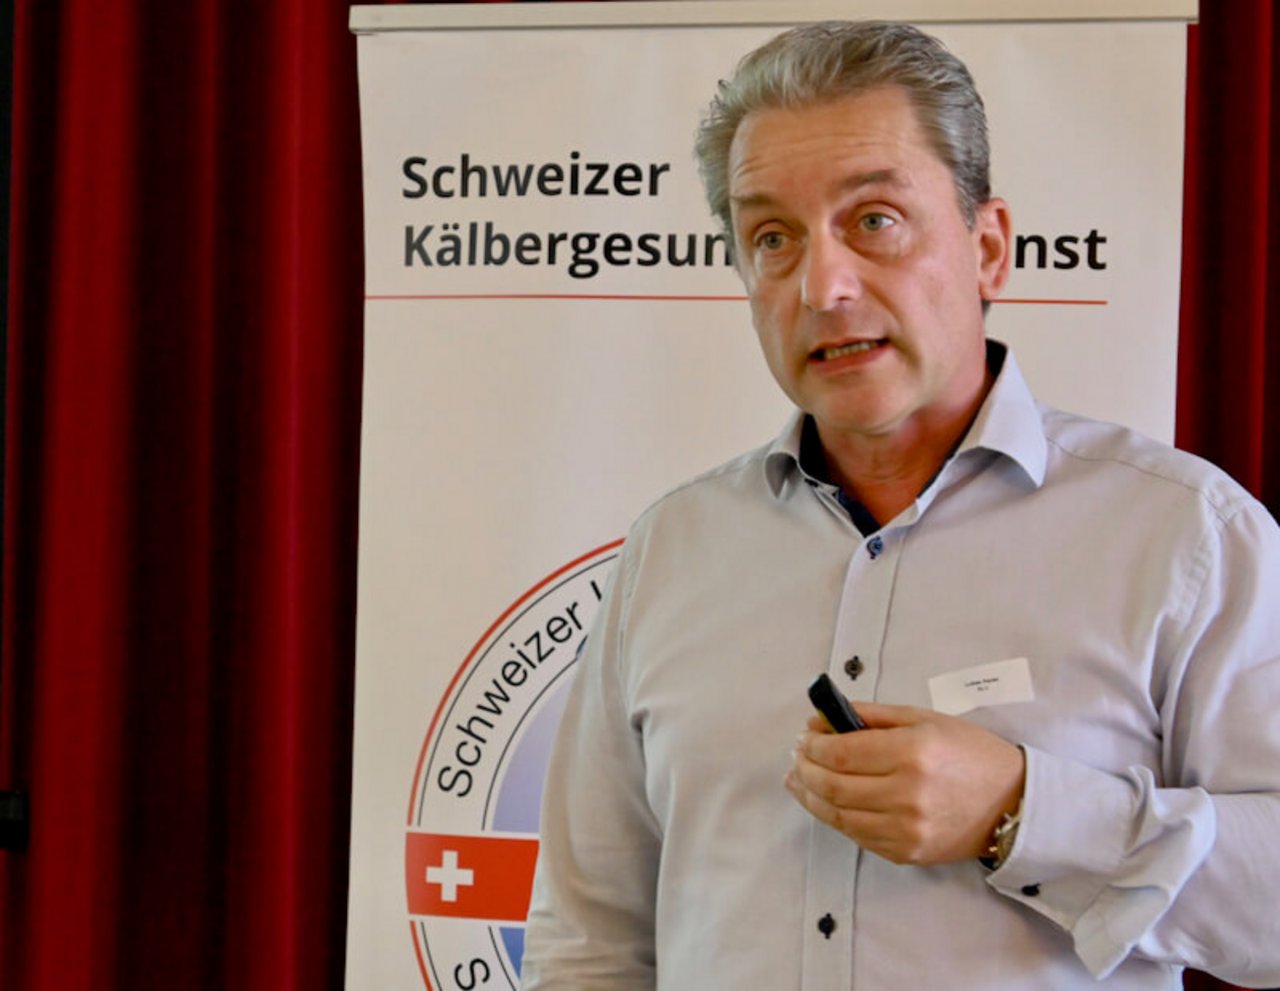 Lukas Perler ist seit dem 1. September Geschäftsführer der Organisation Nutztiergesellschaft Schweiz. (Bild jba)